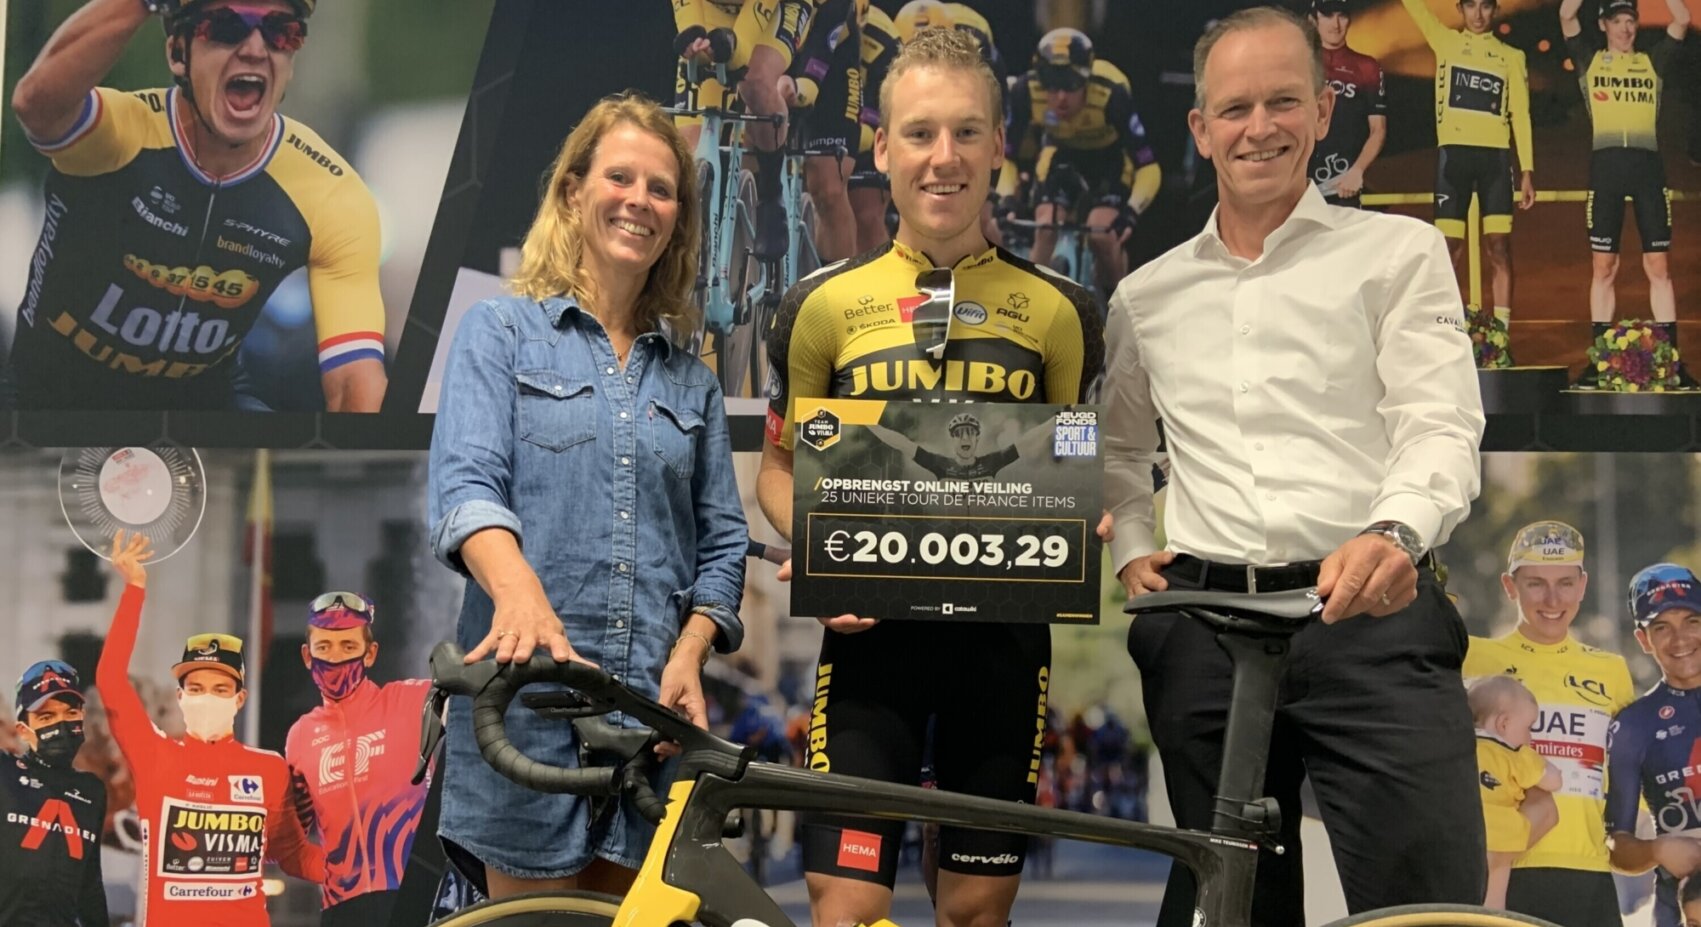 Auction of unique Tour de France items yields €20,000 for charity	